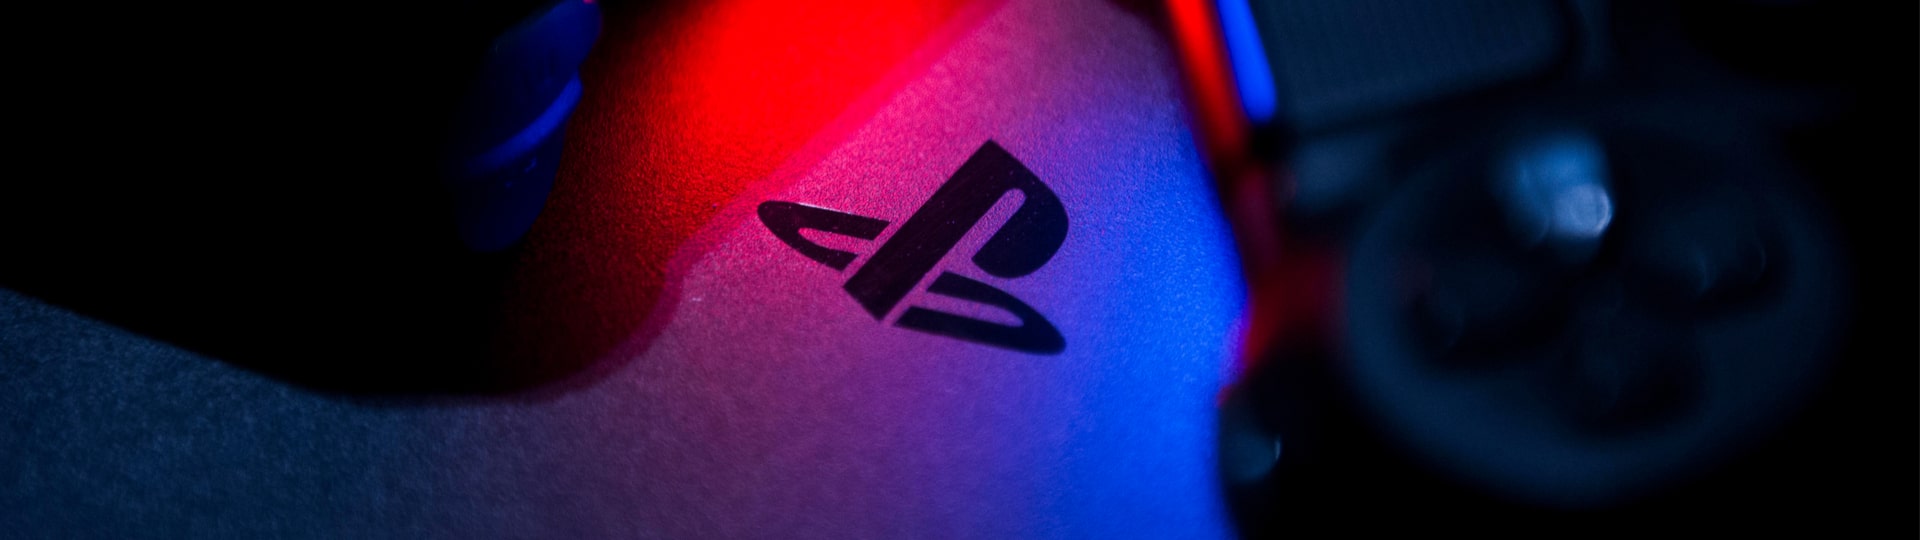 Sony čelí v Británii kvůli poplatkům v PlayStation žalobě o pět miliard liber